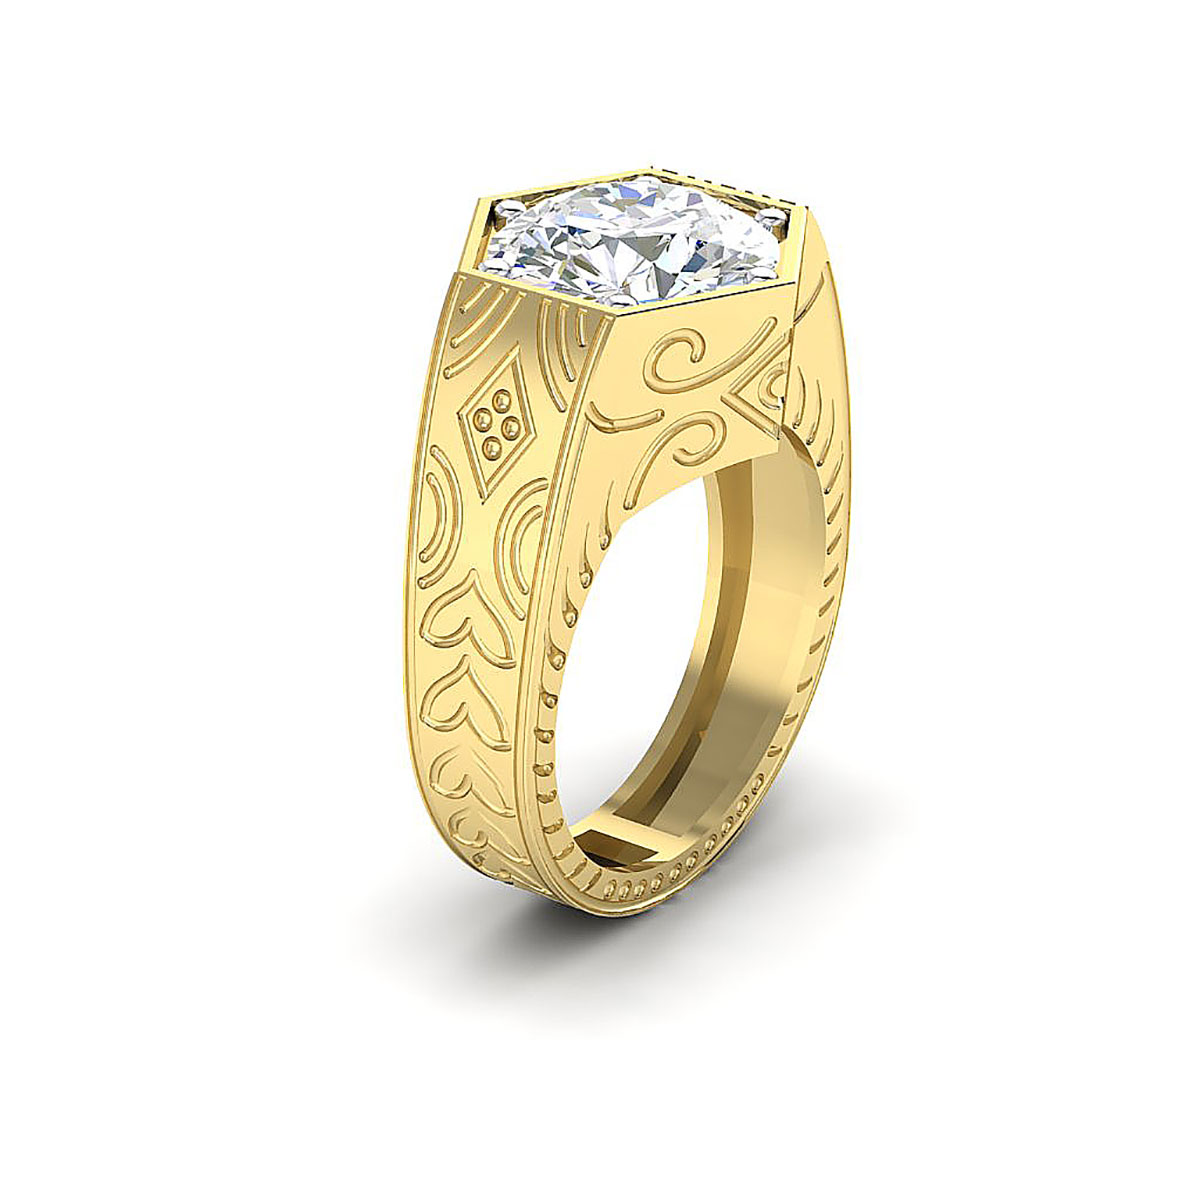 Buy Oscar Round Diamond Ring For Men Online